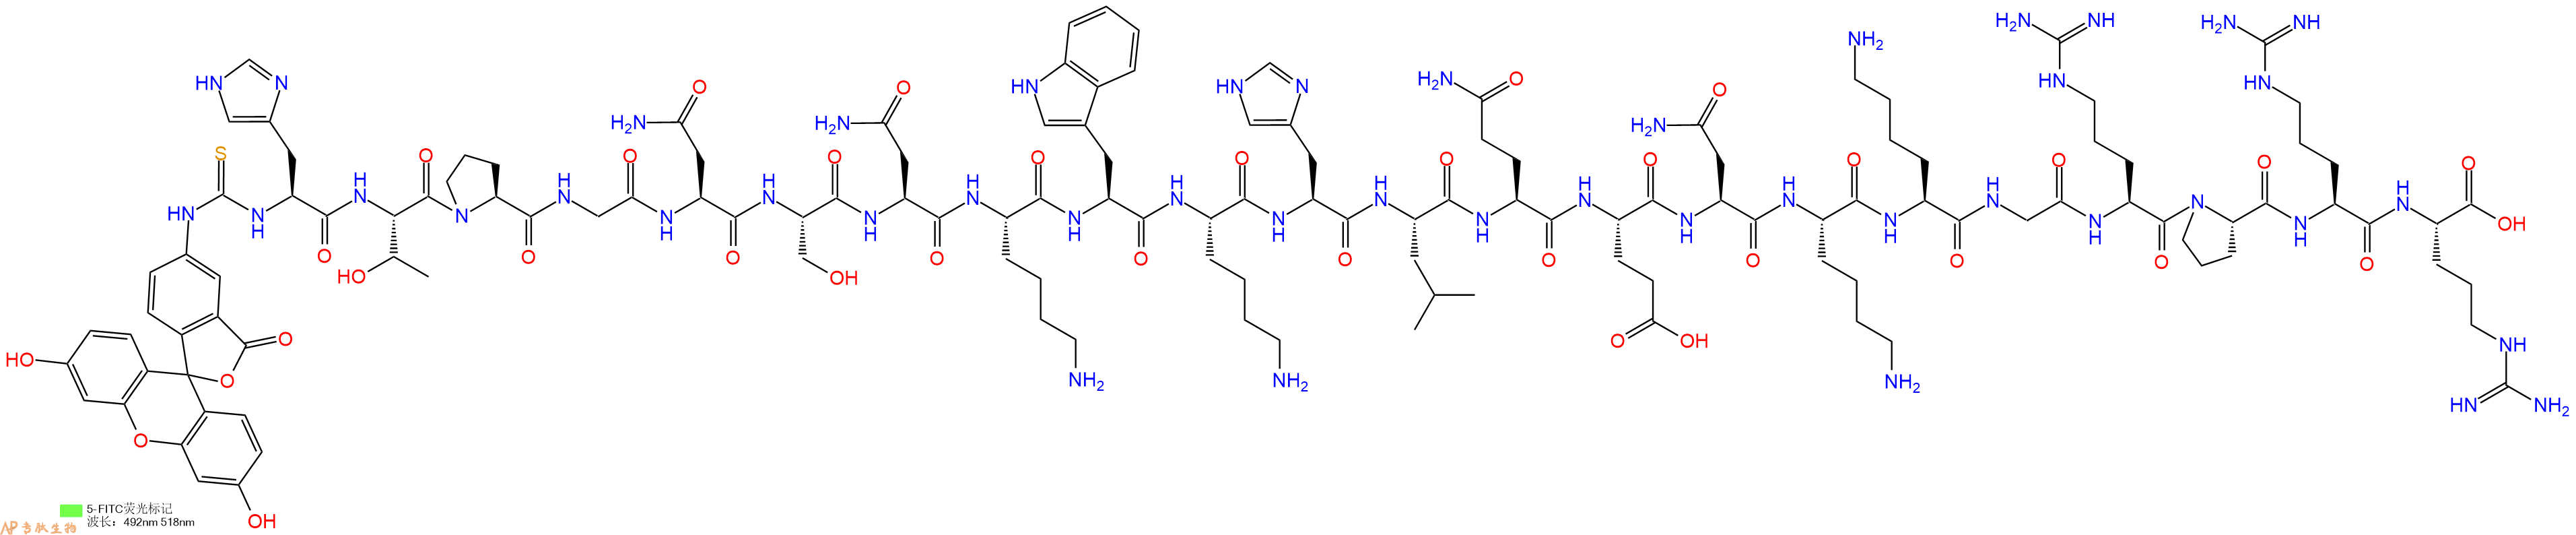 专肽生物产品5FITC-His-Thr-Pro-Gly-Asn-Ser-Asn-Lys-Trp-Lys-His-